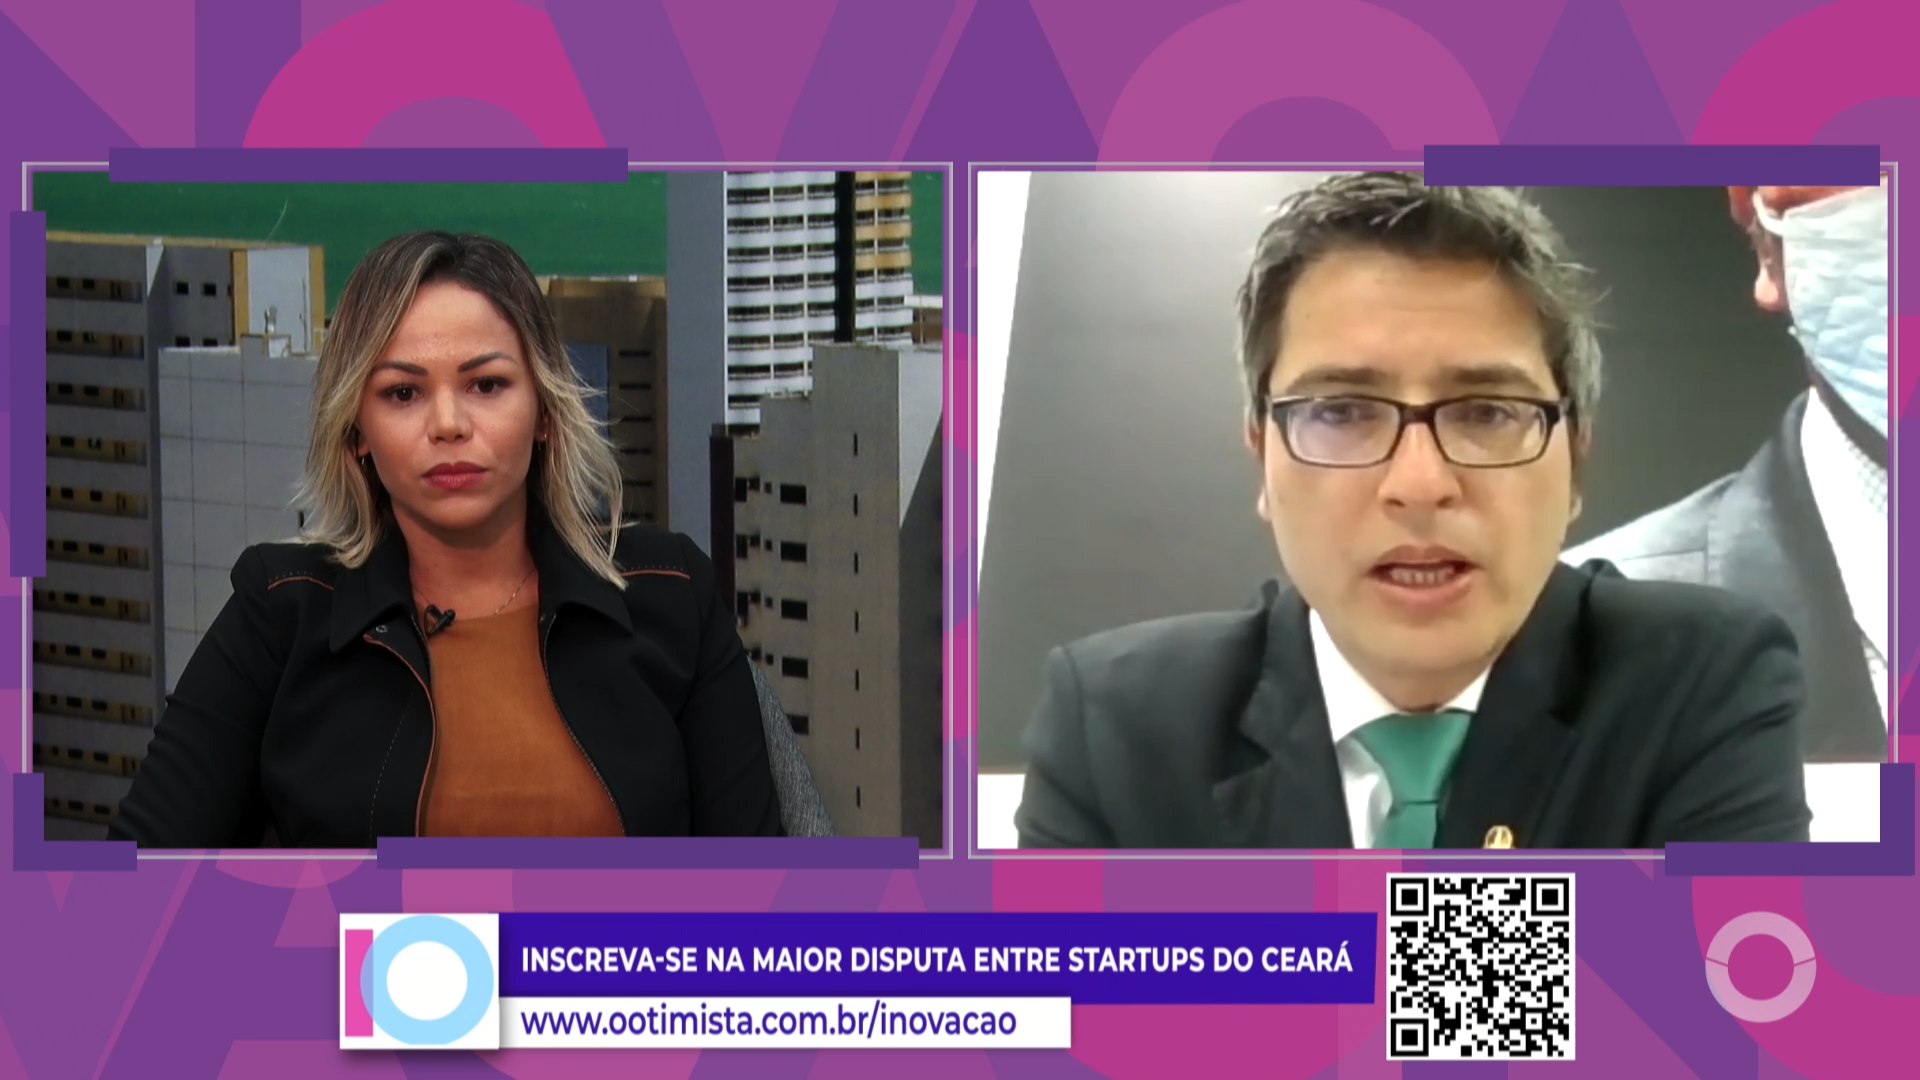 Prêmio Otimista de Inovação – Marco legal das startups com Carlos portinho, Senador PL-RJ